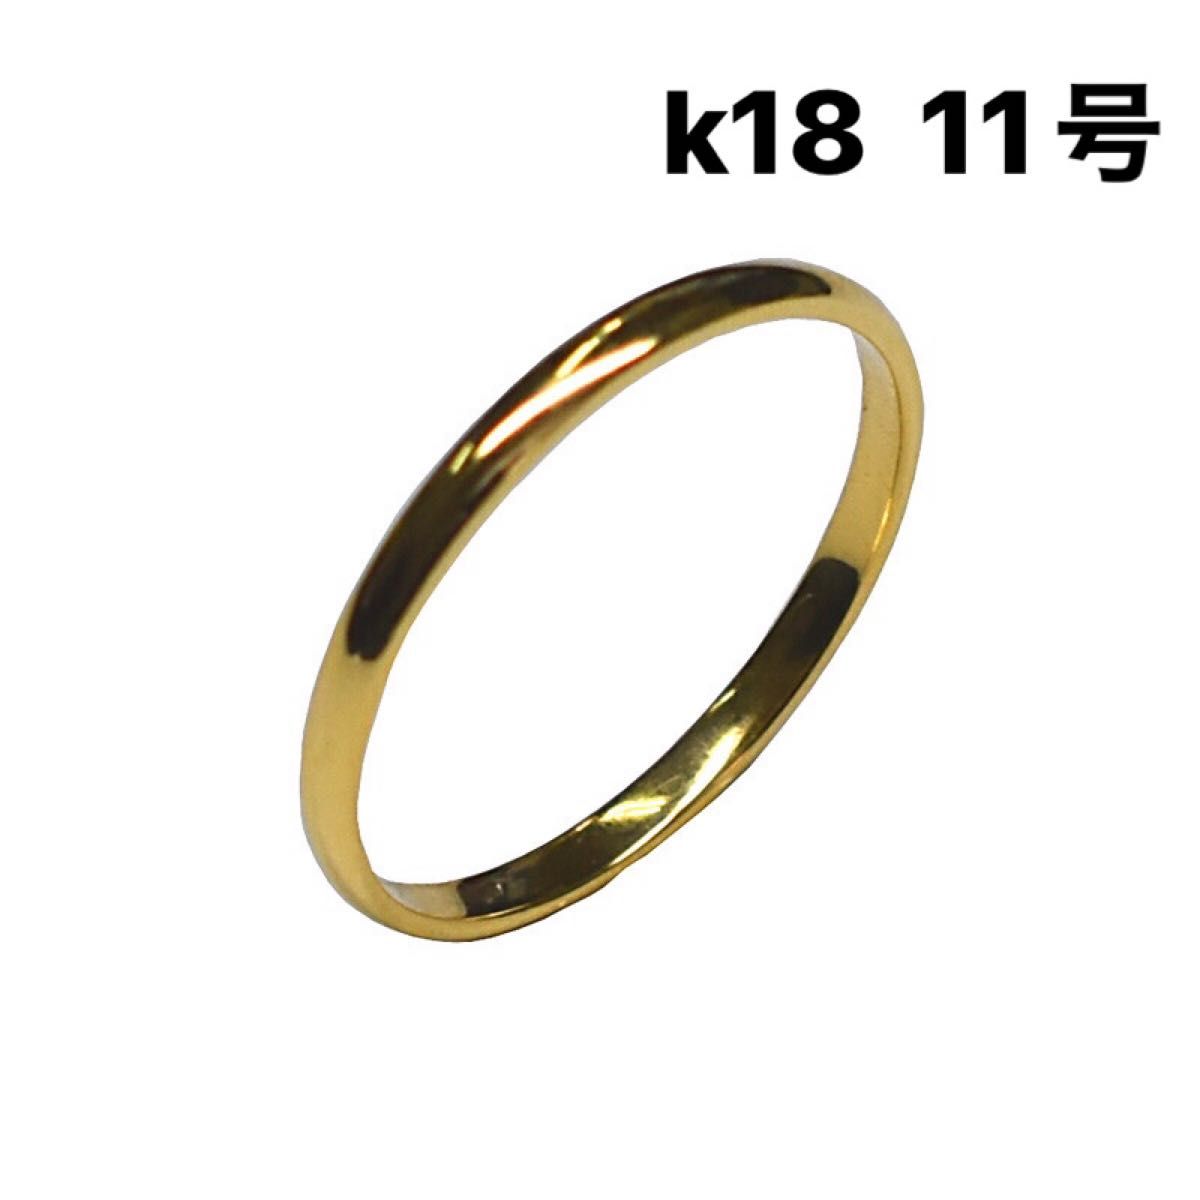 K18 アクセサリー リング 指輪 甲丸リング 18金 ゴールド 11号-